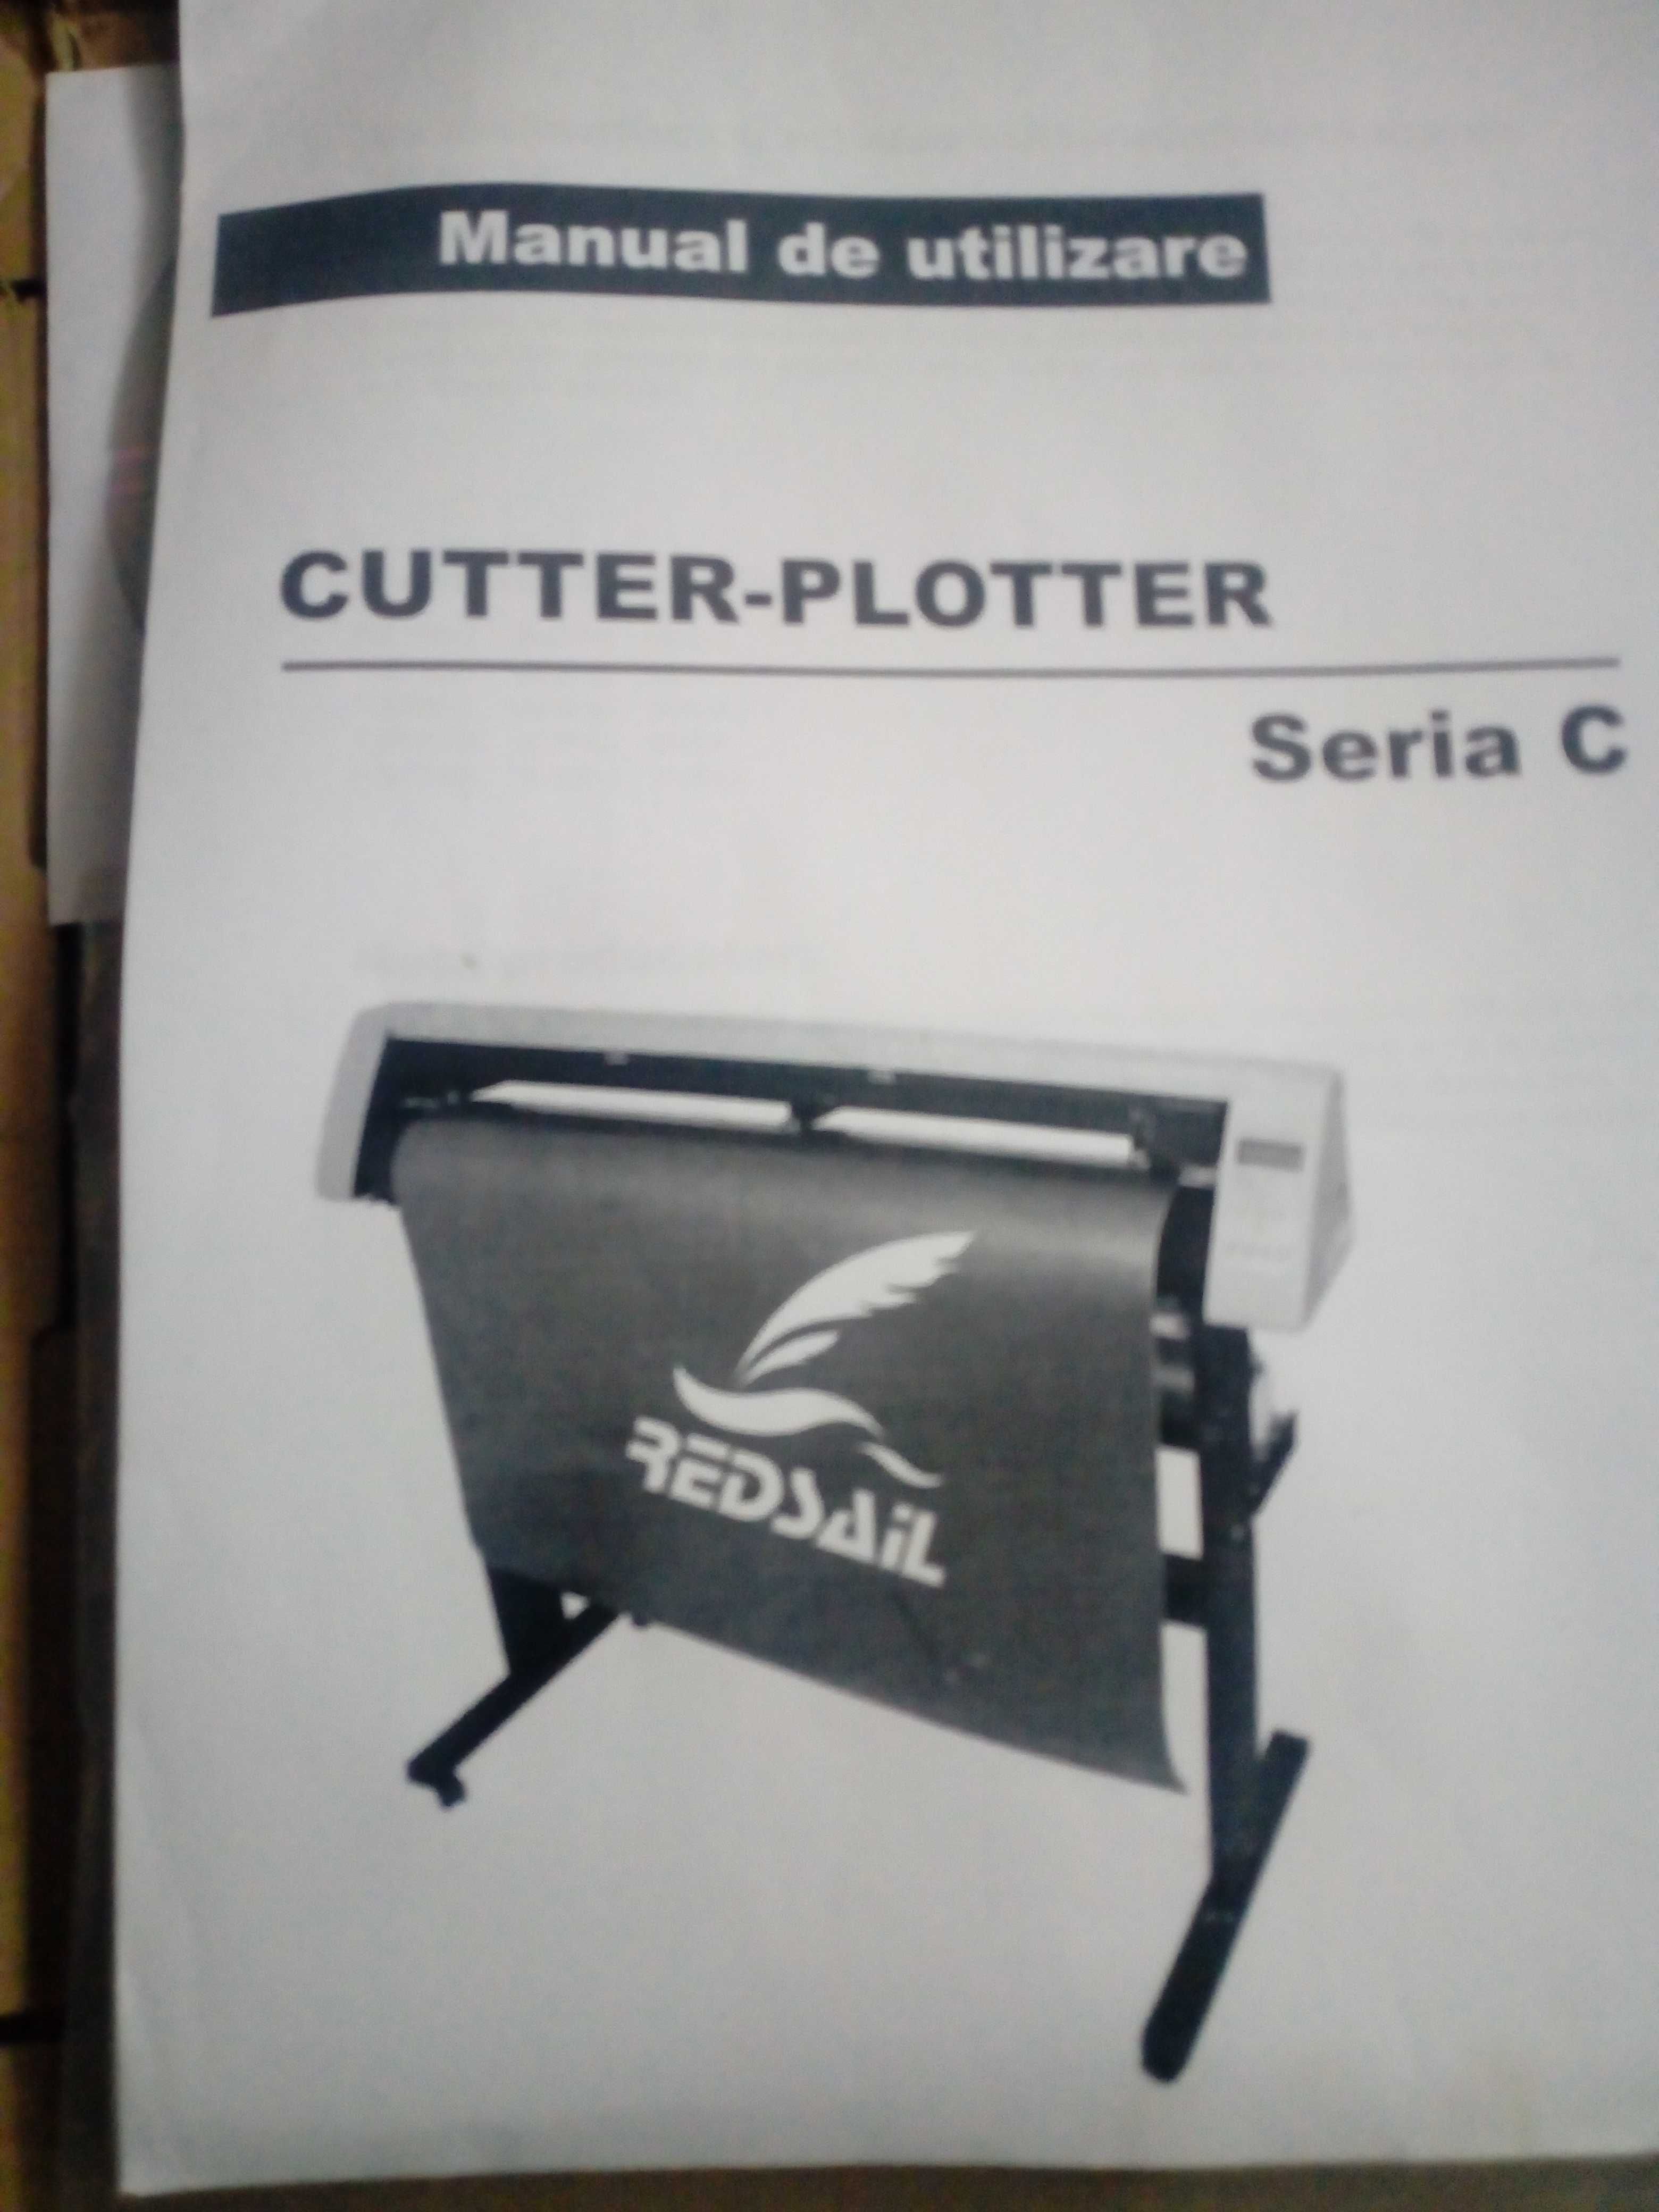 Cutter ploter Redsail